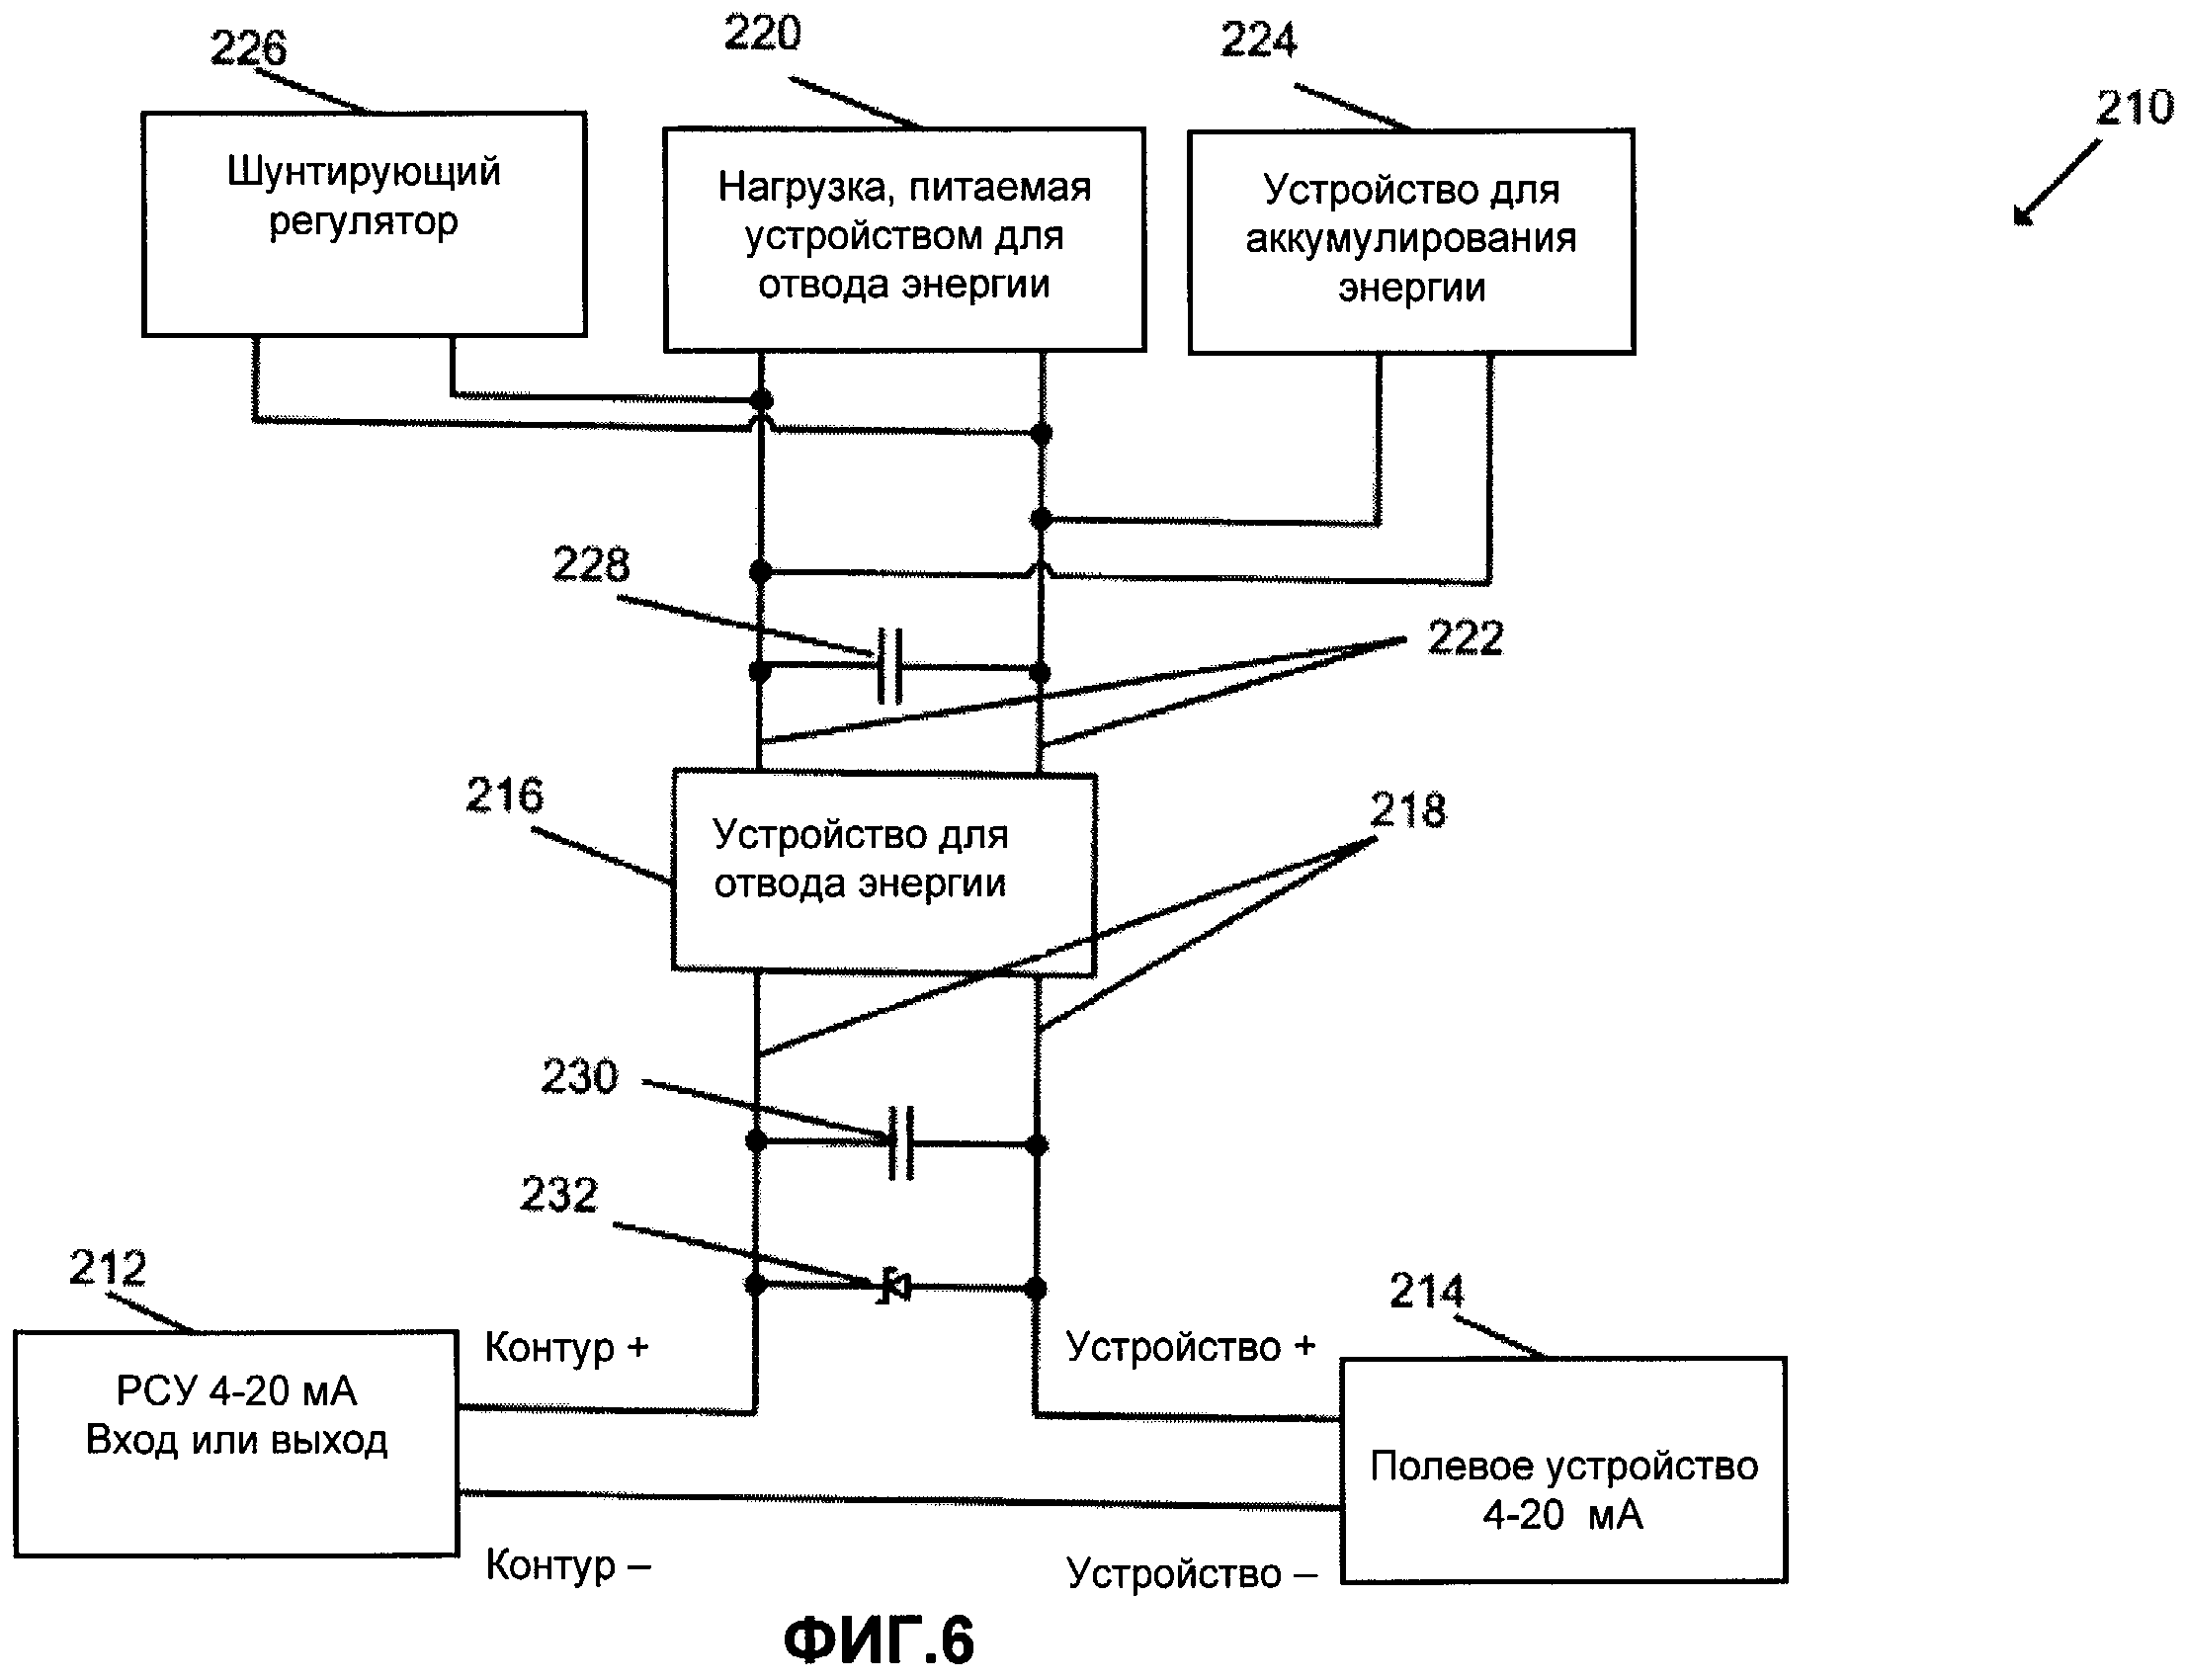 Схема встроенного контроля двунаправленного тракта VC-4